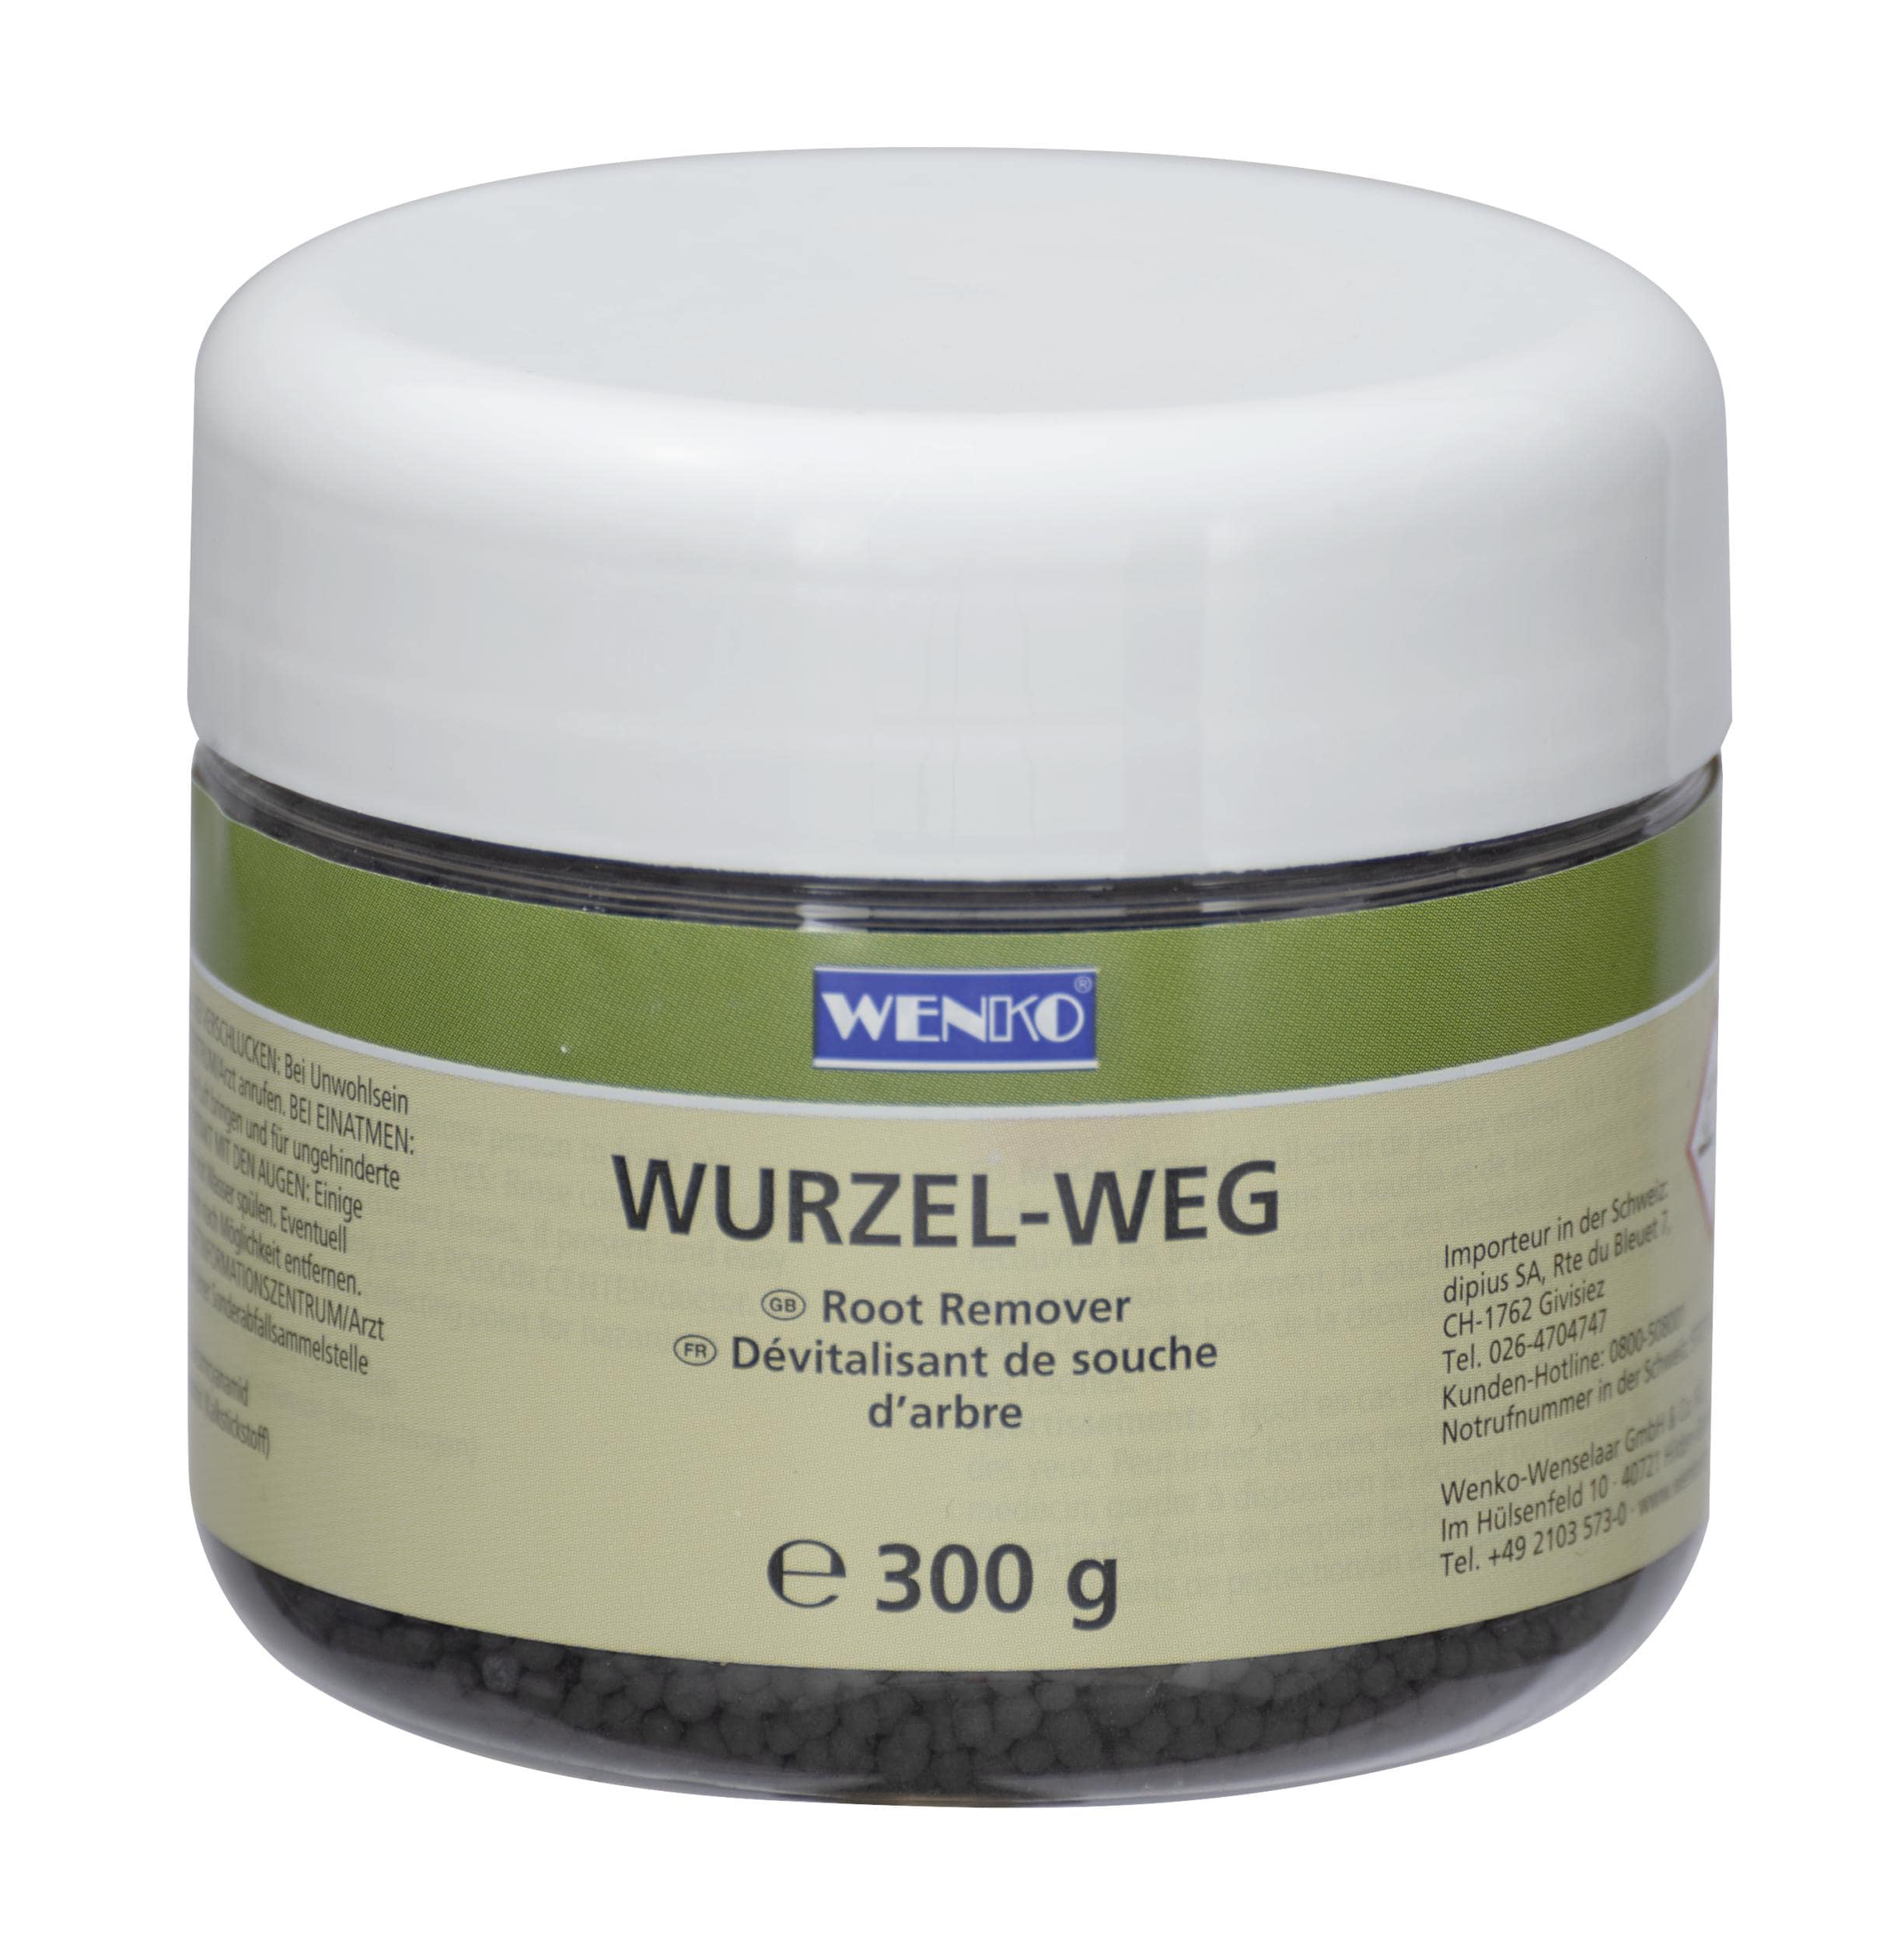 Wenko Wurzel-weg 300g